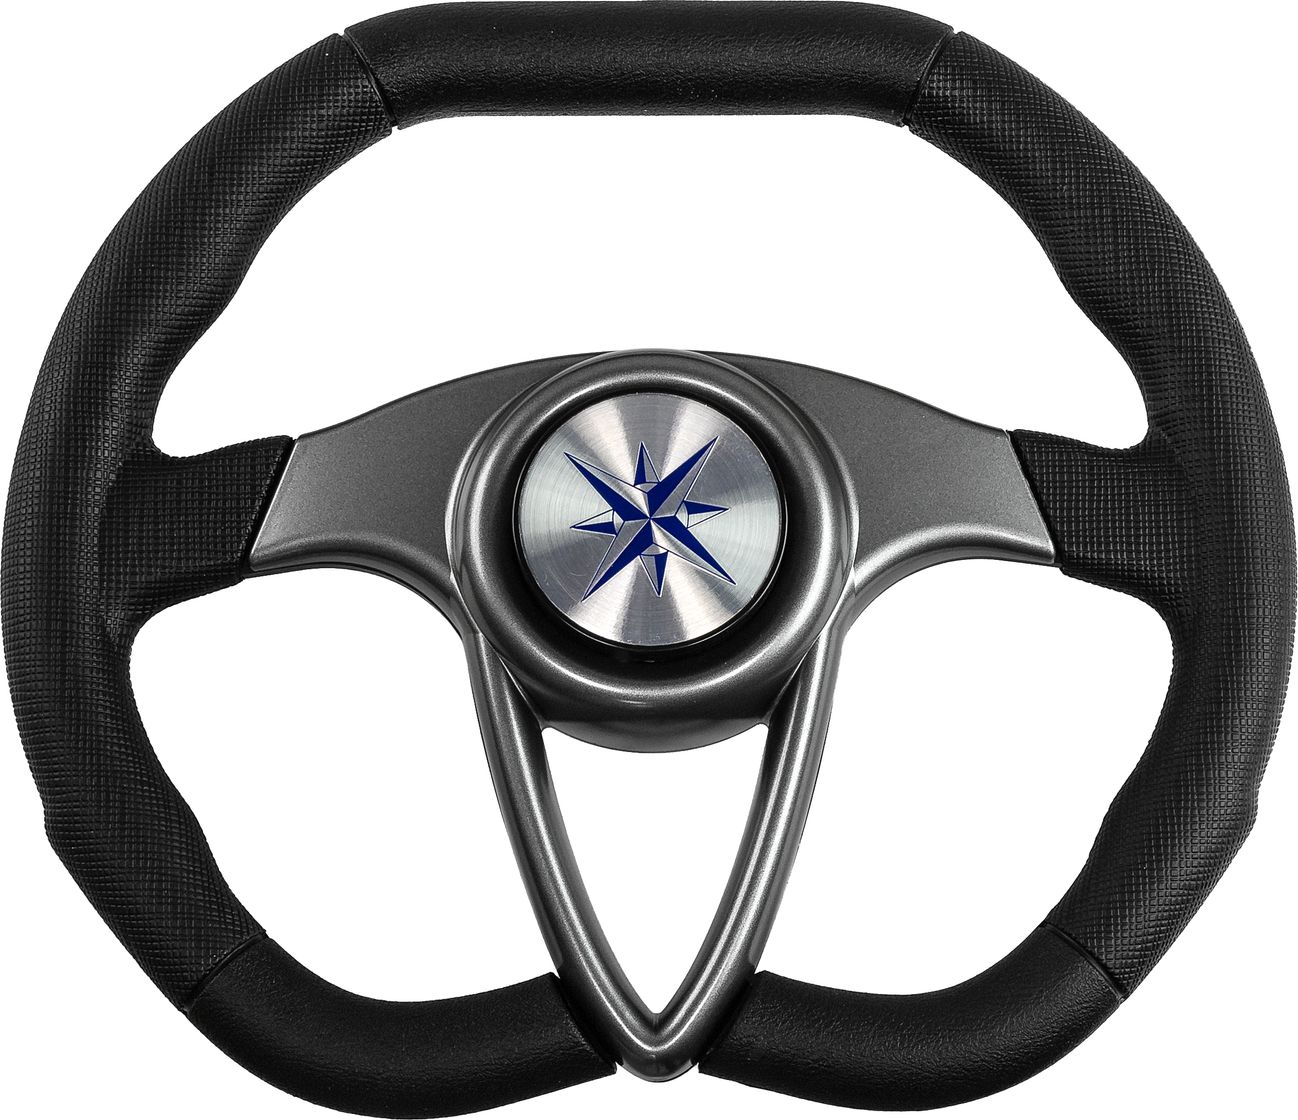 Рулевое колесо BARRACUDA обод черный, спицы серебряные д. 350 мм VN135002-01 рулевое колесо orion обод спицы серебряные д 340 мм vn934122 01